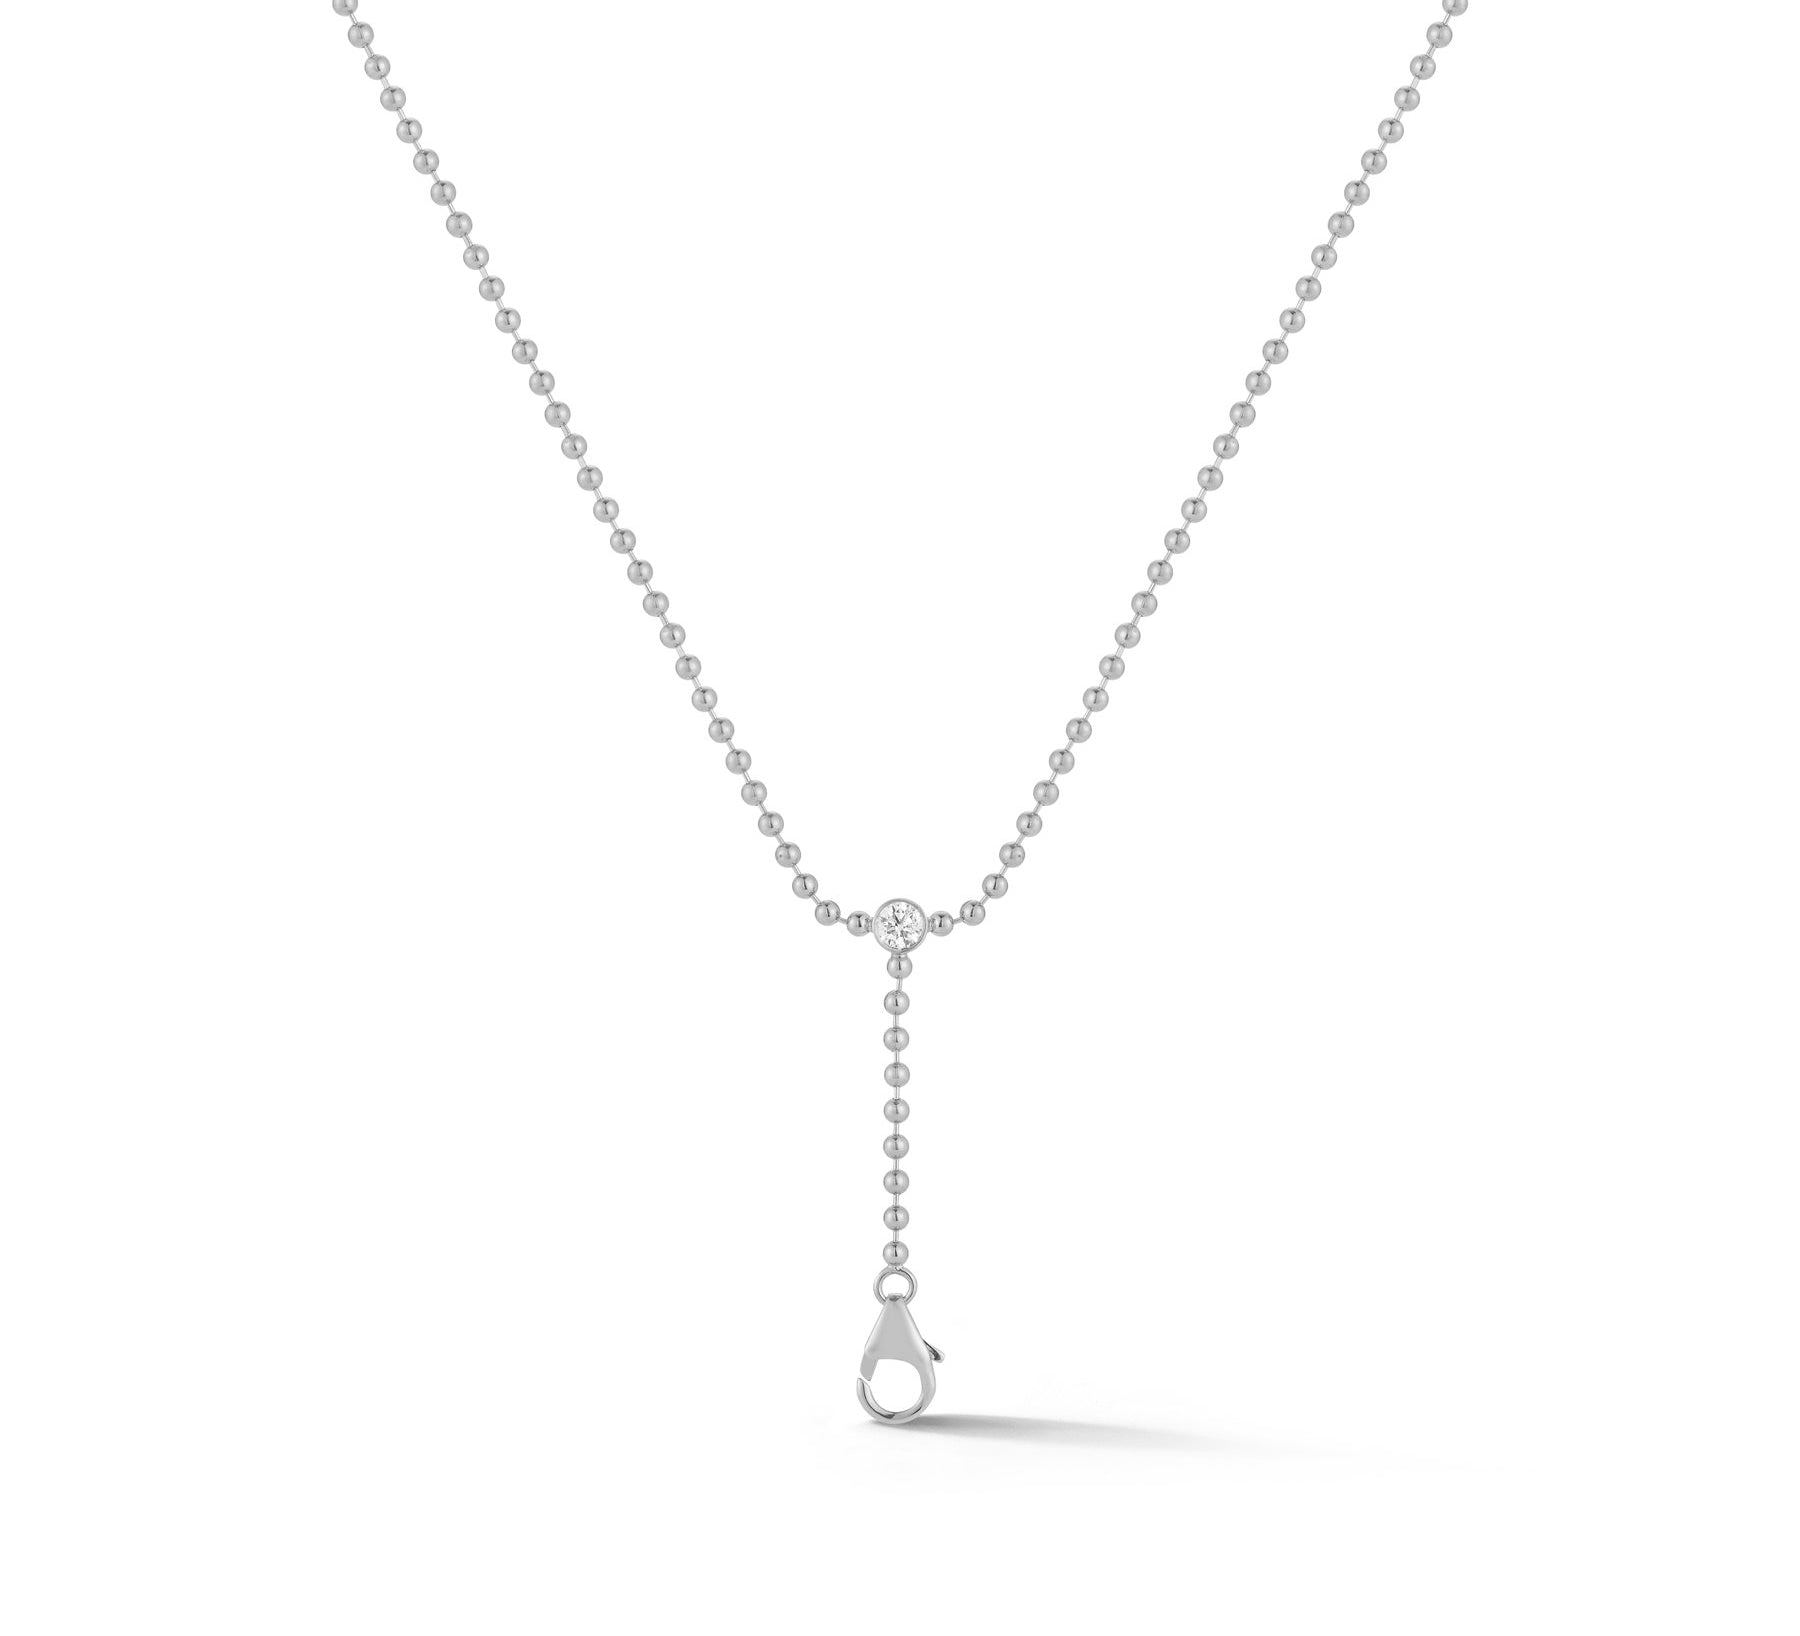 Connexion Chain No. 10 Y Necklace with Diamond